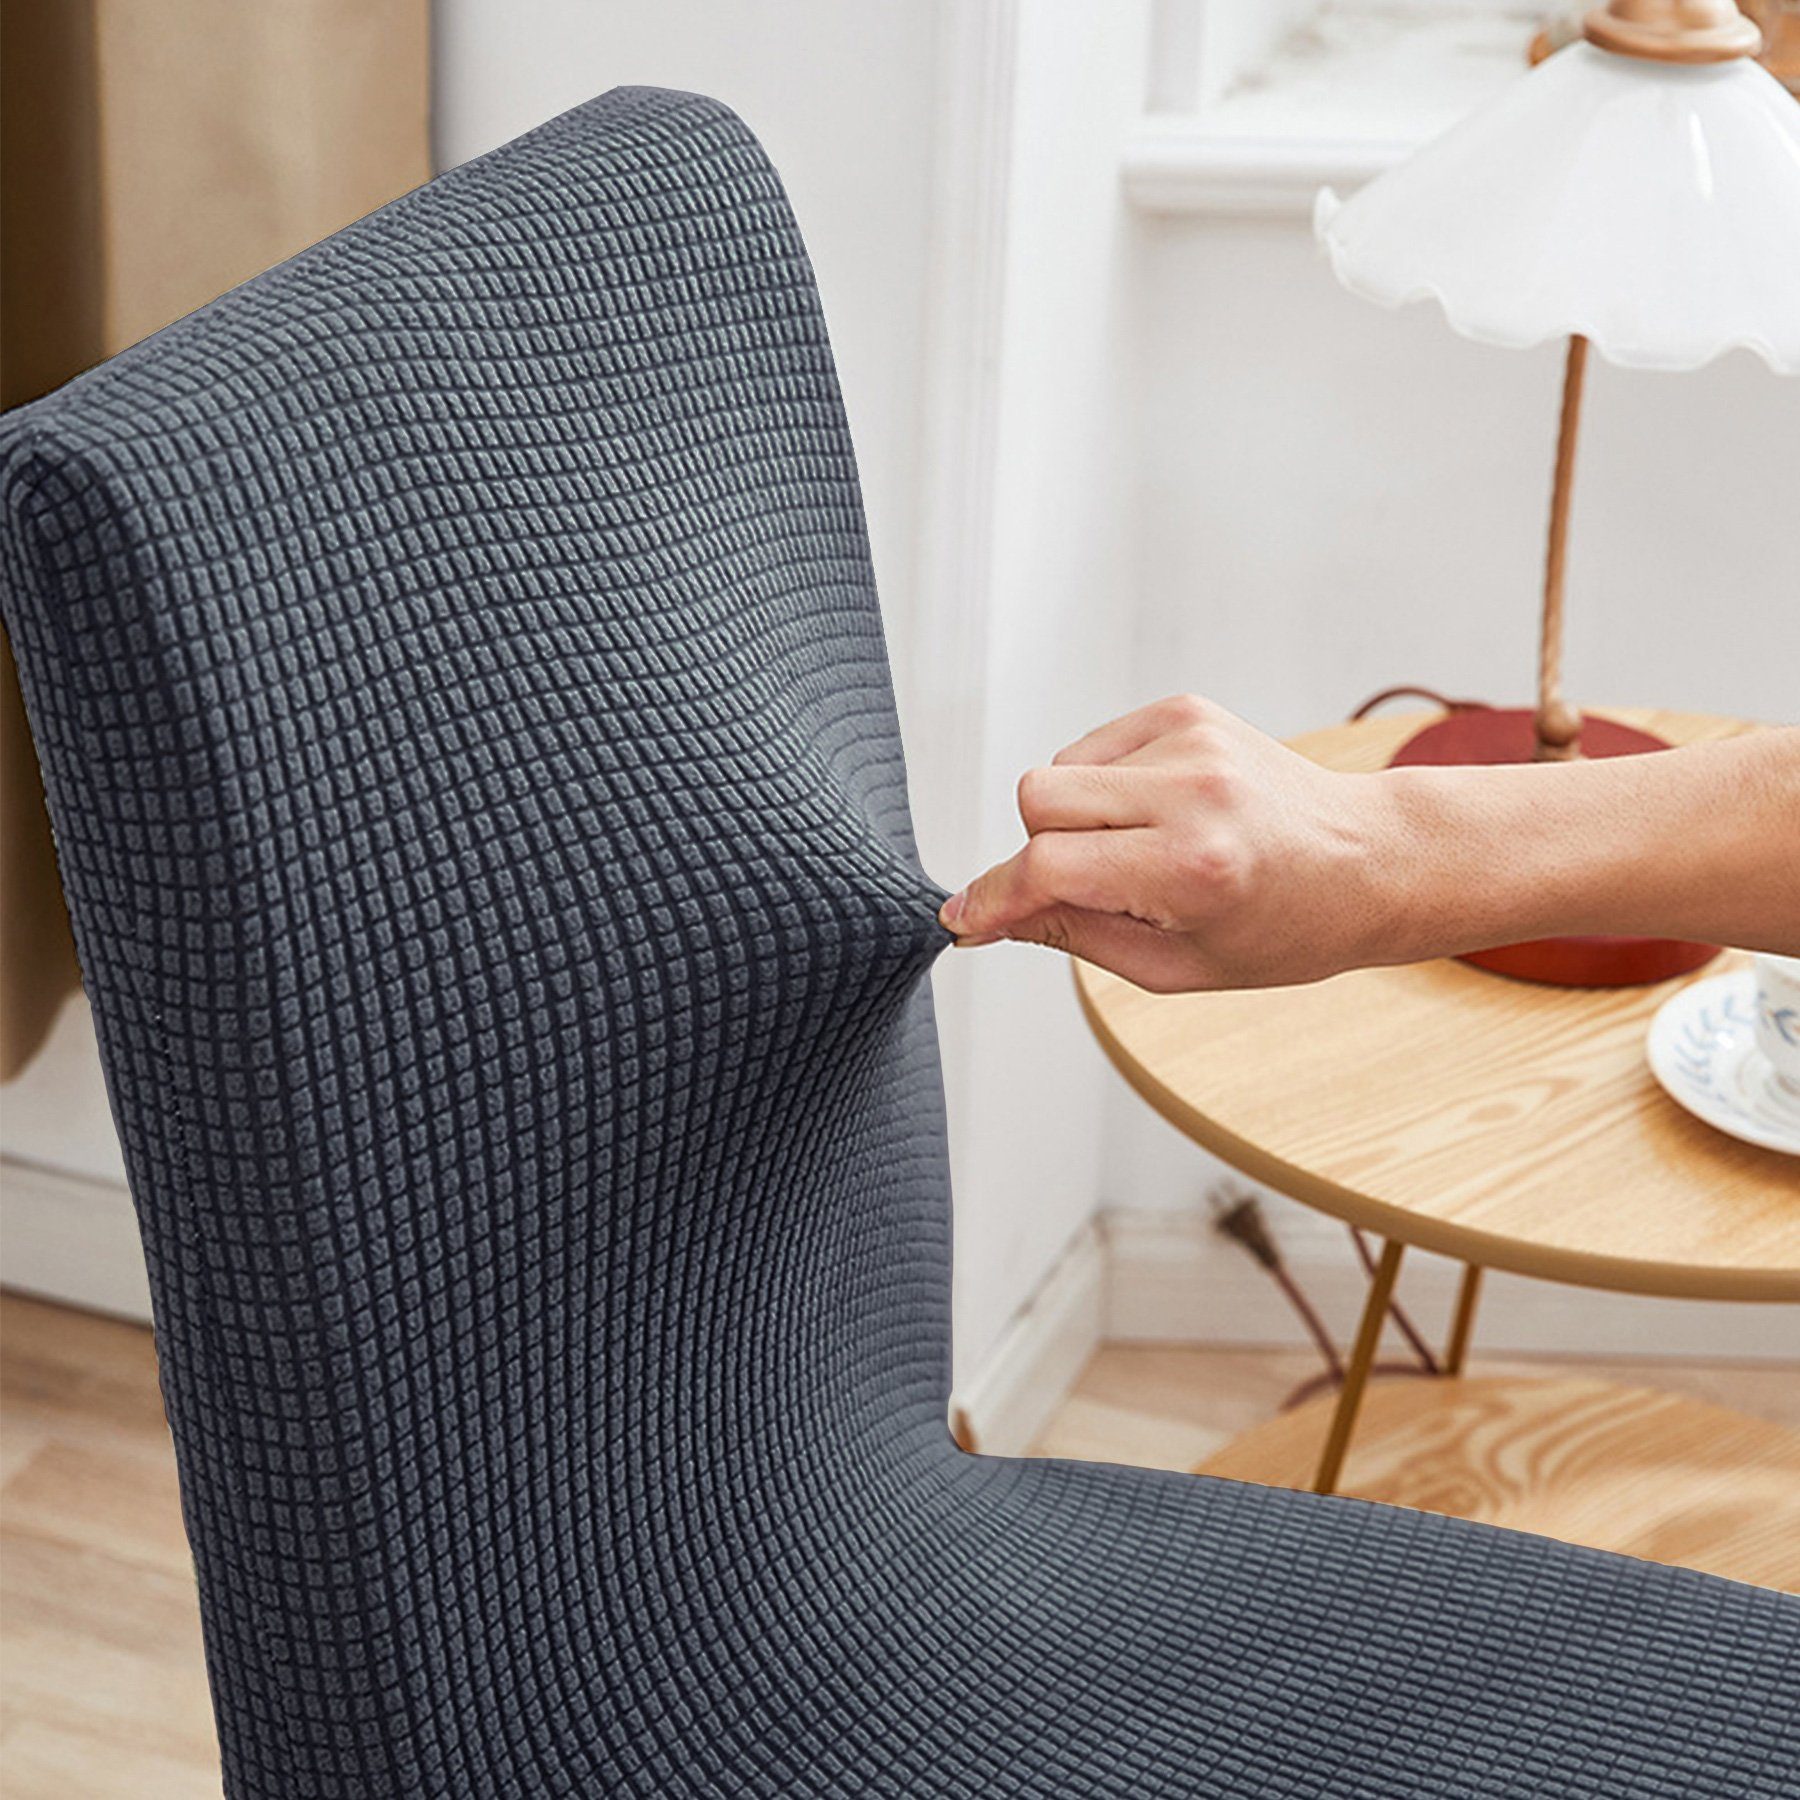 Gummiband Hussen Stretch Abnehmbare für dunkelgrau-M Sitzflächenhusse Stuhlhussen, Stühle, Waschbar MULISOFT, mit Stuhlbezug